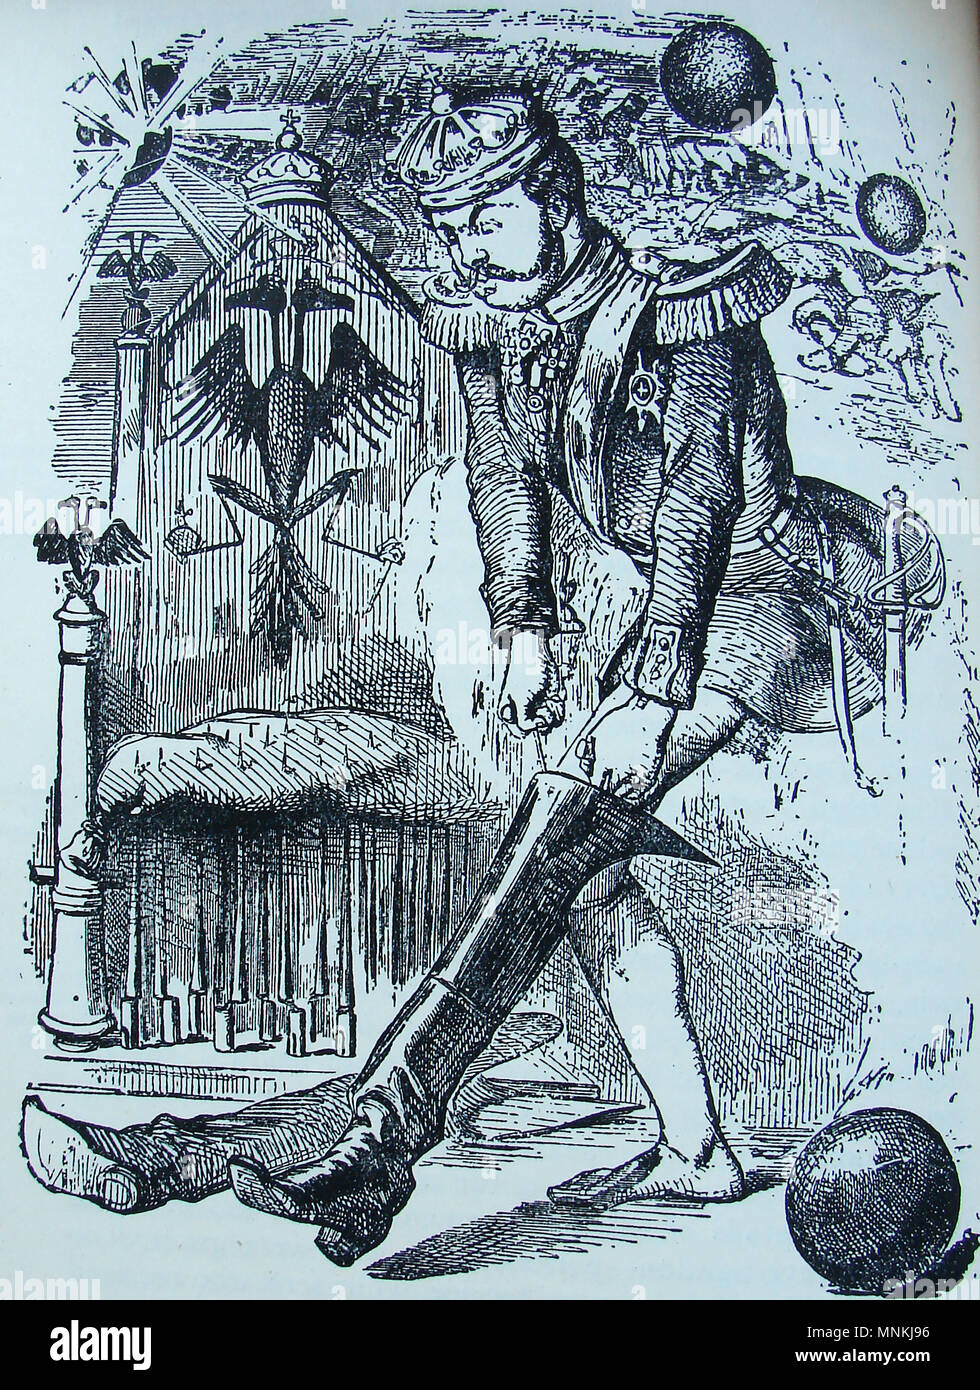 La caricature politique de l'époque - le jeune tsar Alexandre II (1818-1881) de la Russie d'essayer sur ses nouvelles chaussures, lorsque 'entrée en sa propriété' pendant la guerre de Crimée .c'est lui qui a vendu l'Alaska aux États-Unis en 1867 Banque D'Images